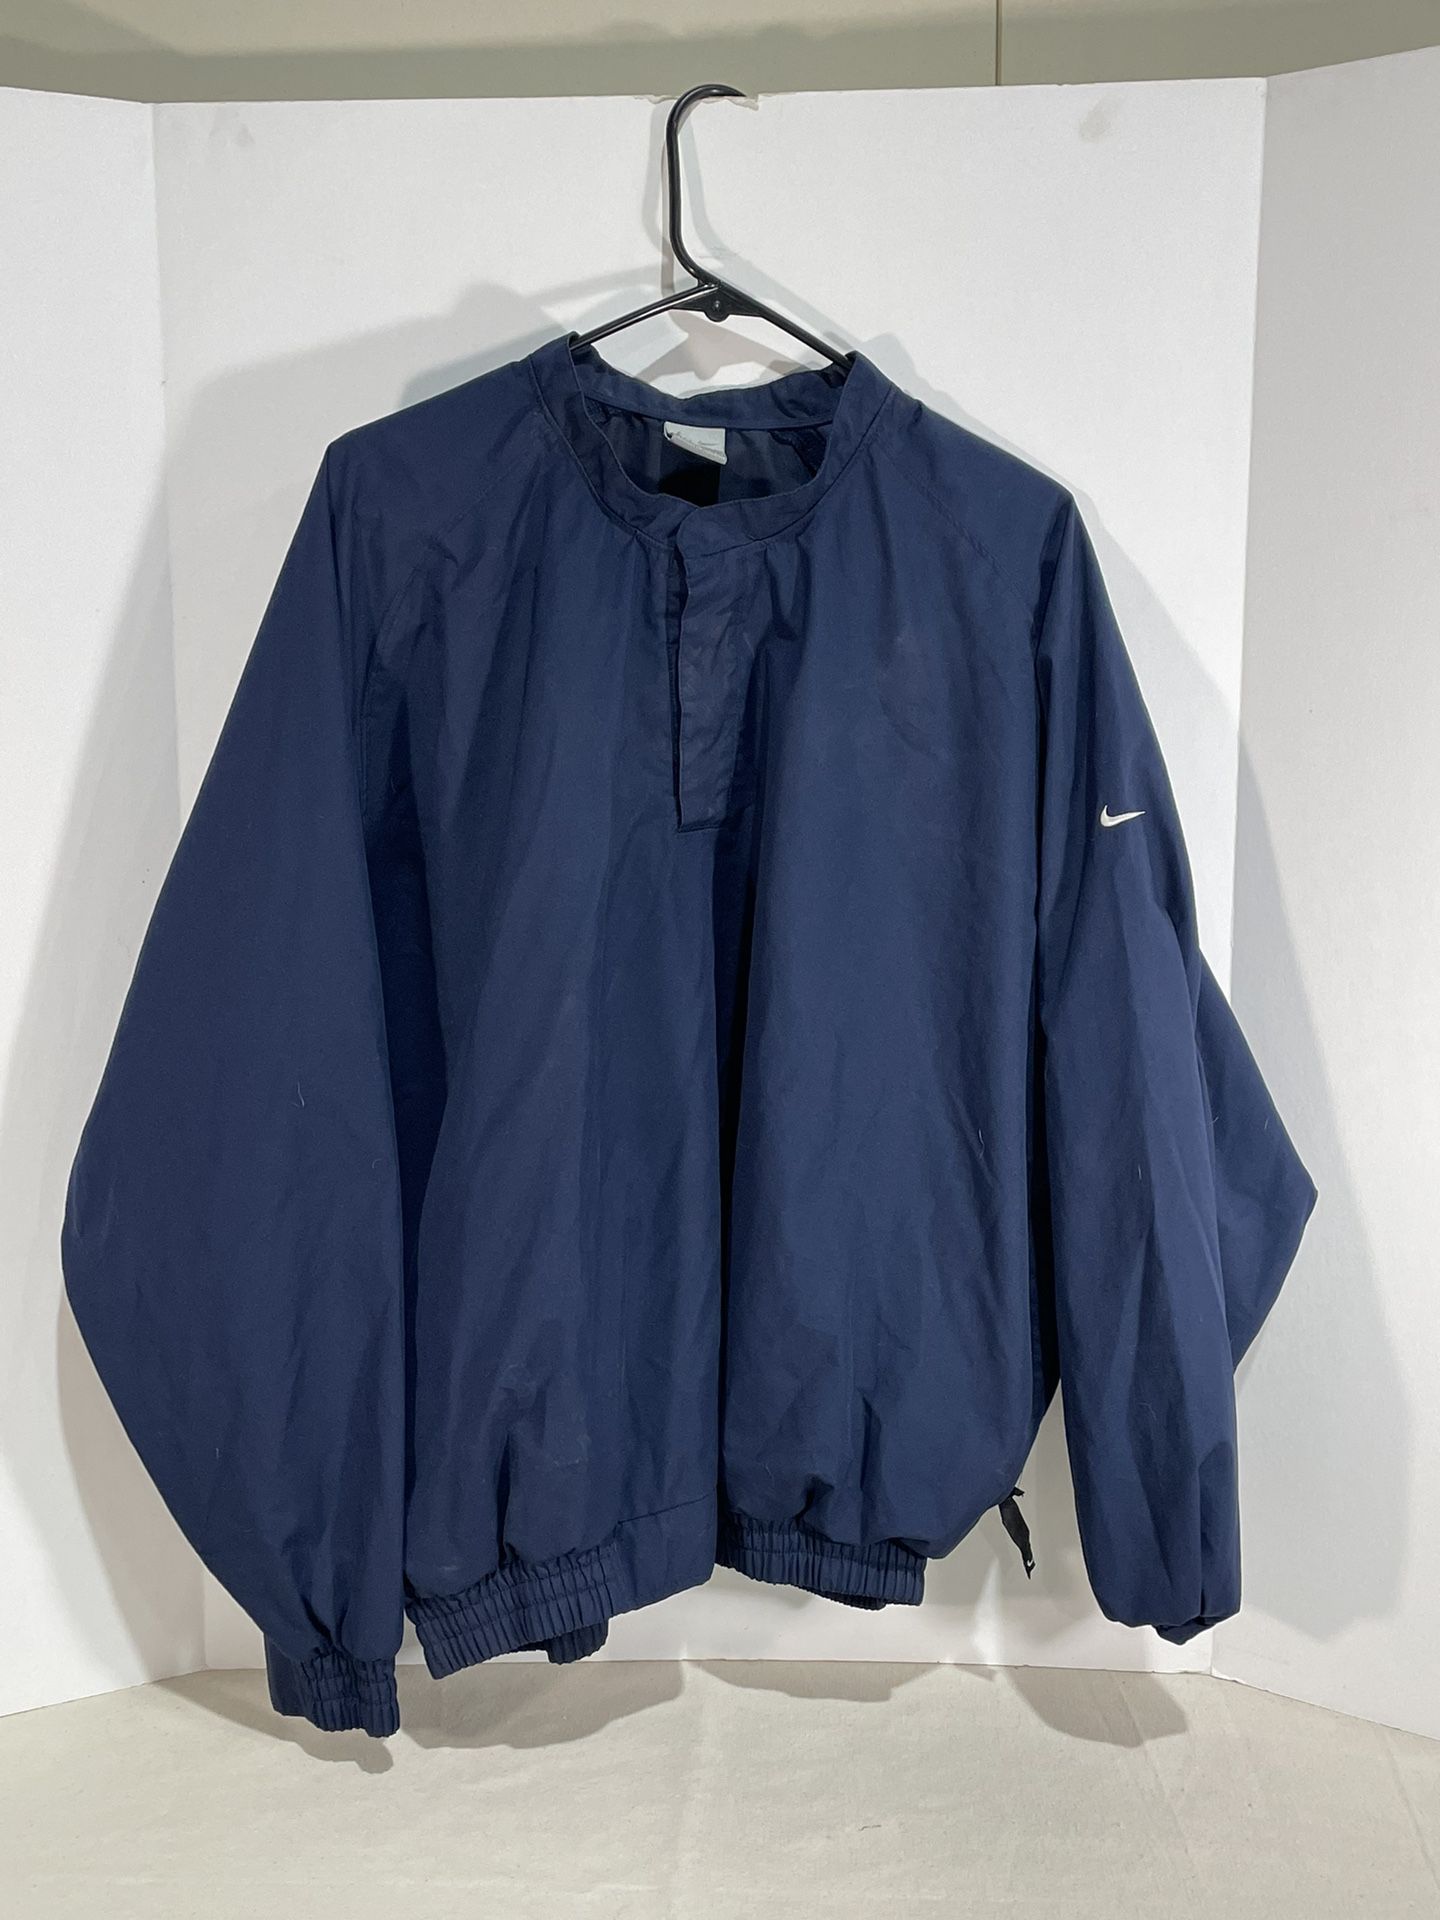 Nike polyester Jacket